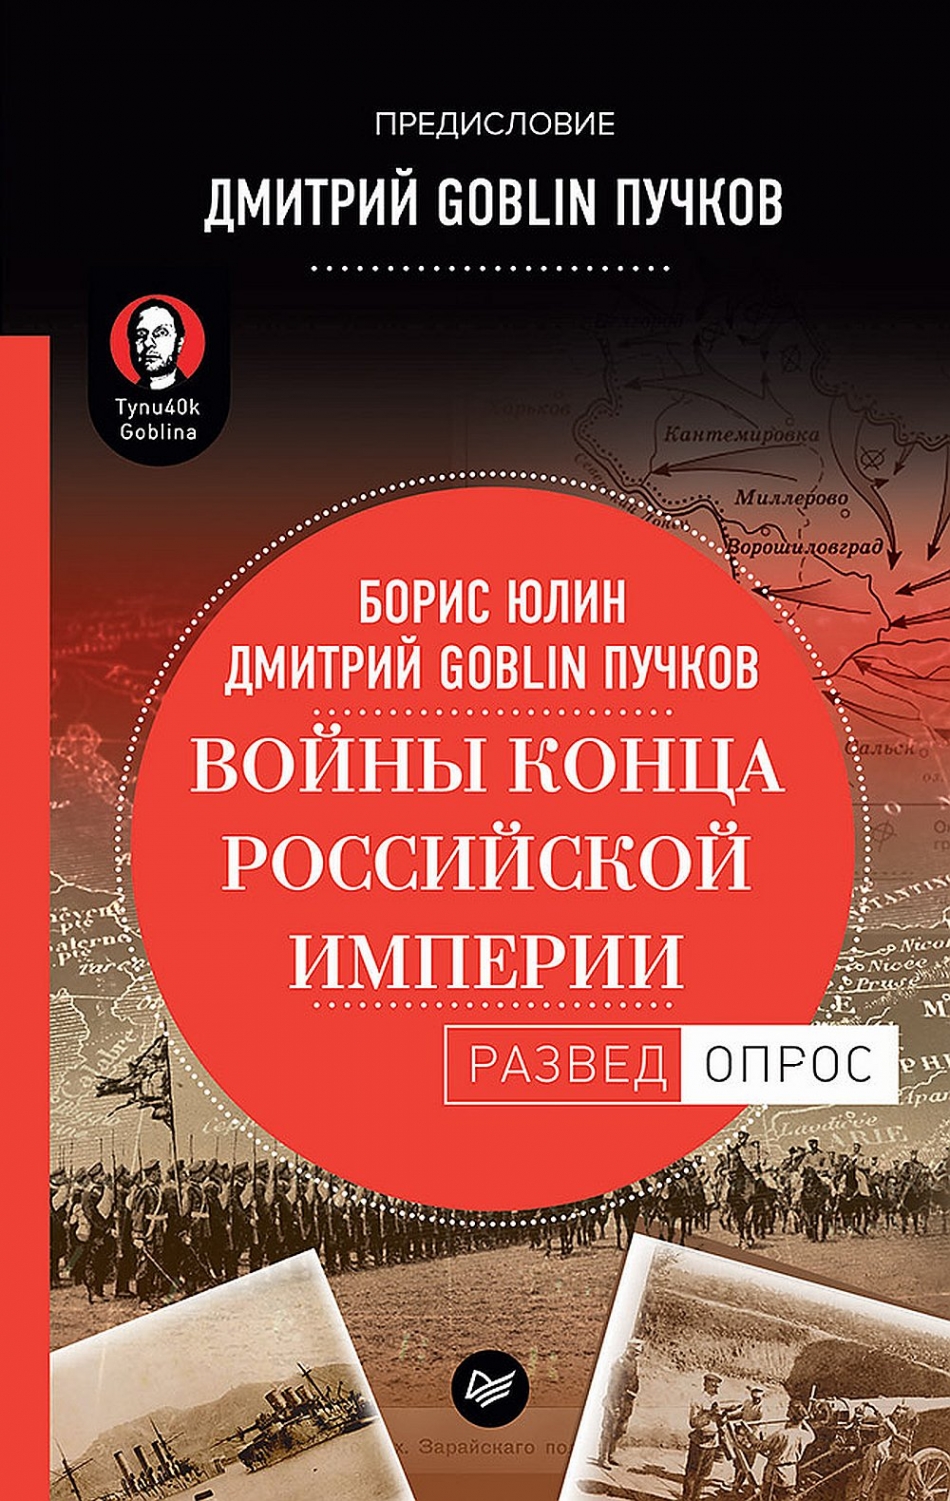 Дмитрий Goblin Пучков, Юлин Б. В. Войны конца Российской империи 